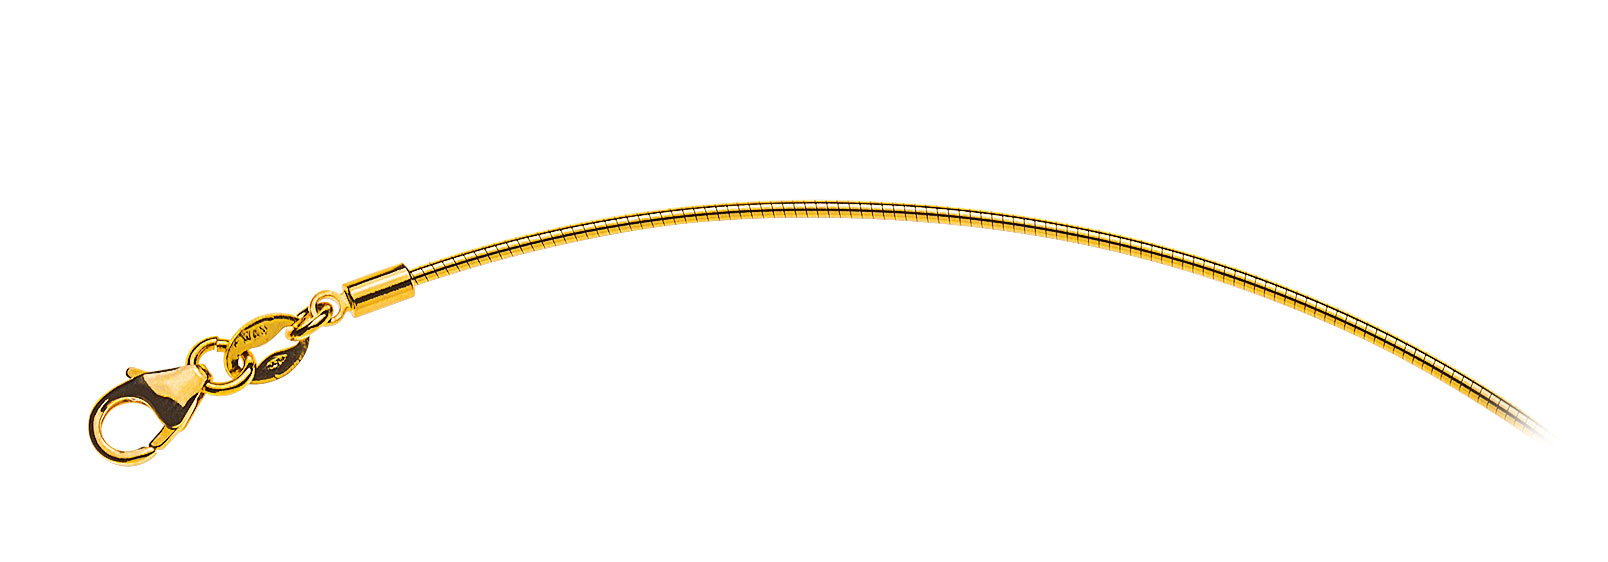 AURONOS Prestige Halskette Gelbgold 18K Omegakette 42cm 1.0mm